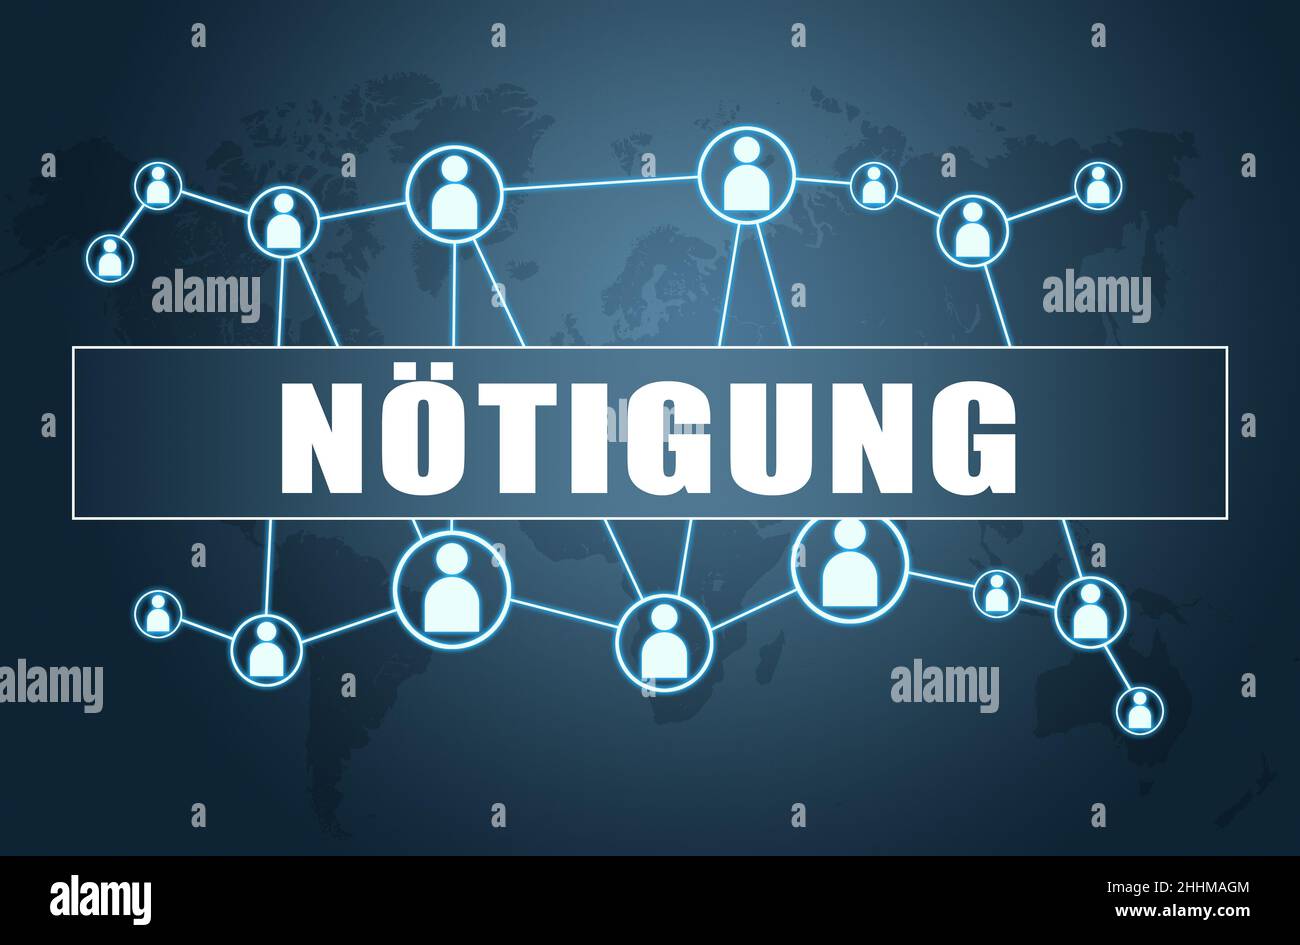 Nötigung - deutsch Wort für Zwang oder Zwang - Textkonzept auf blauem Hintergrund mit Weltkarte und sozialen Symbolen. Stockfoto